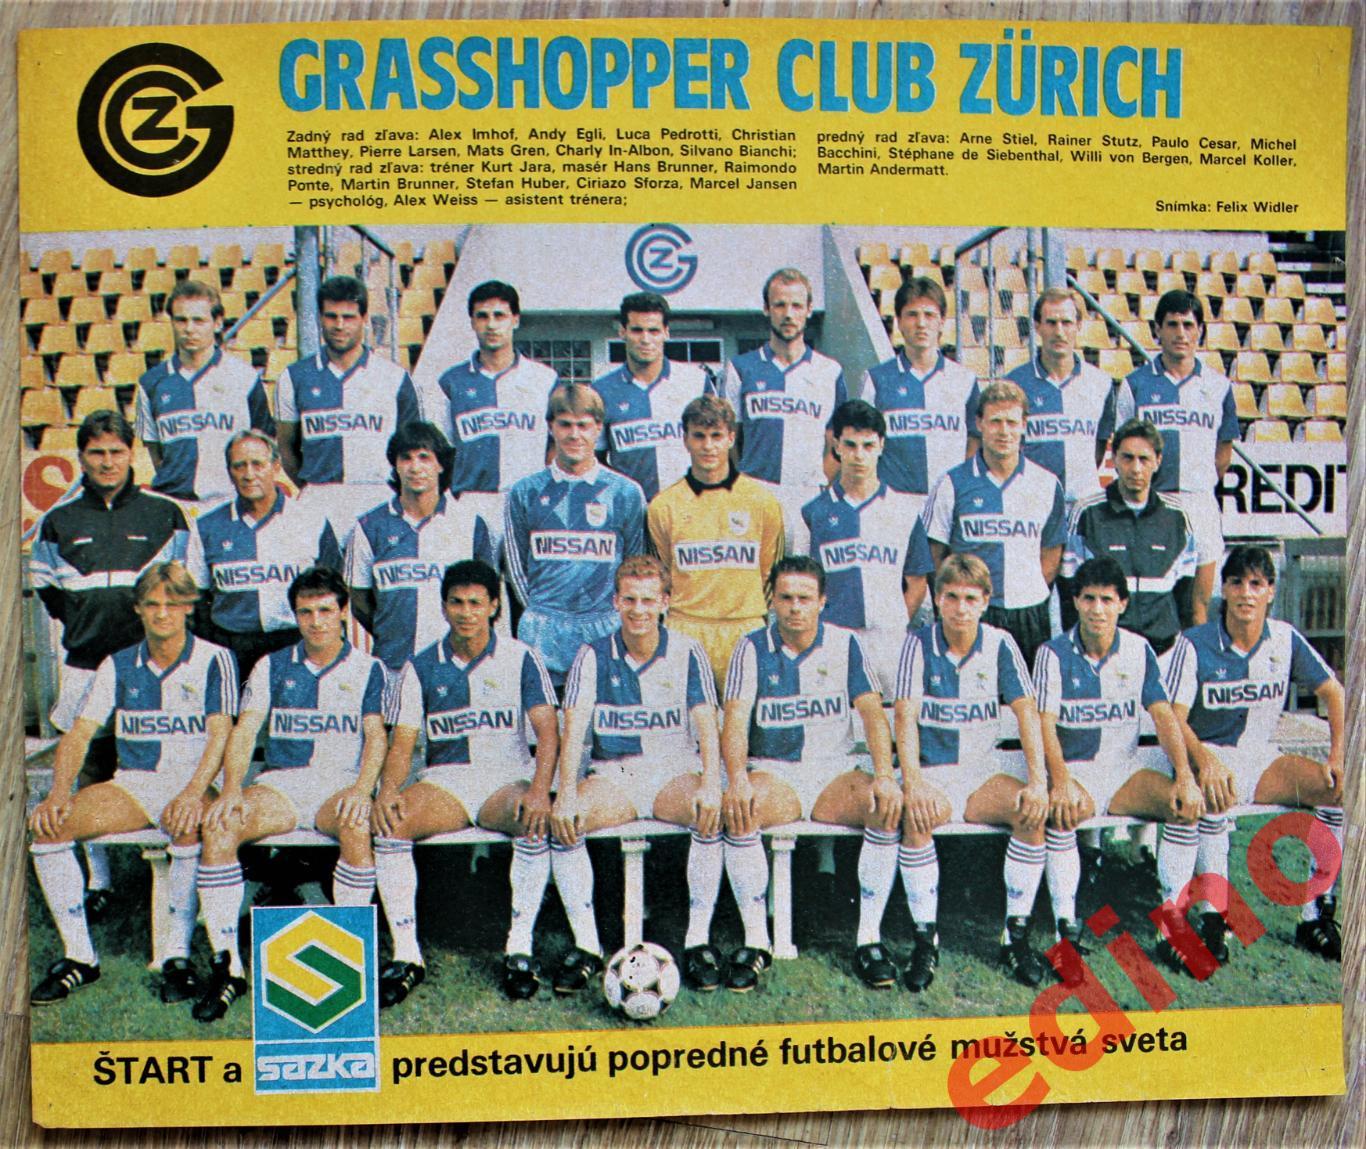 журнал Start 1987 г. сериал славных Грассхопперс Швейцария